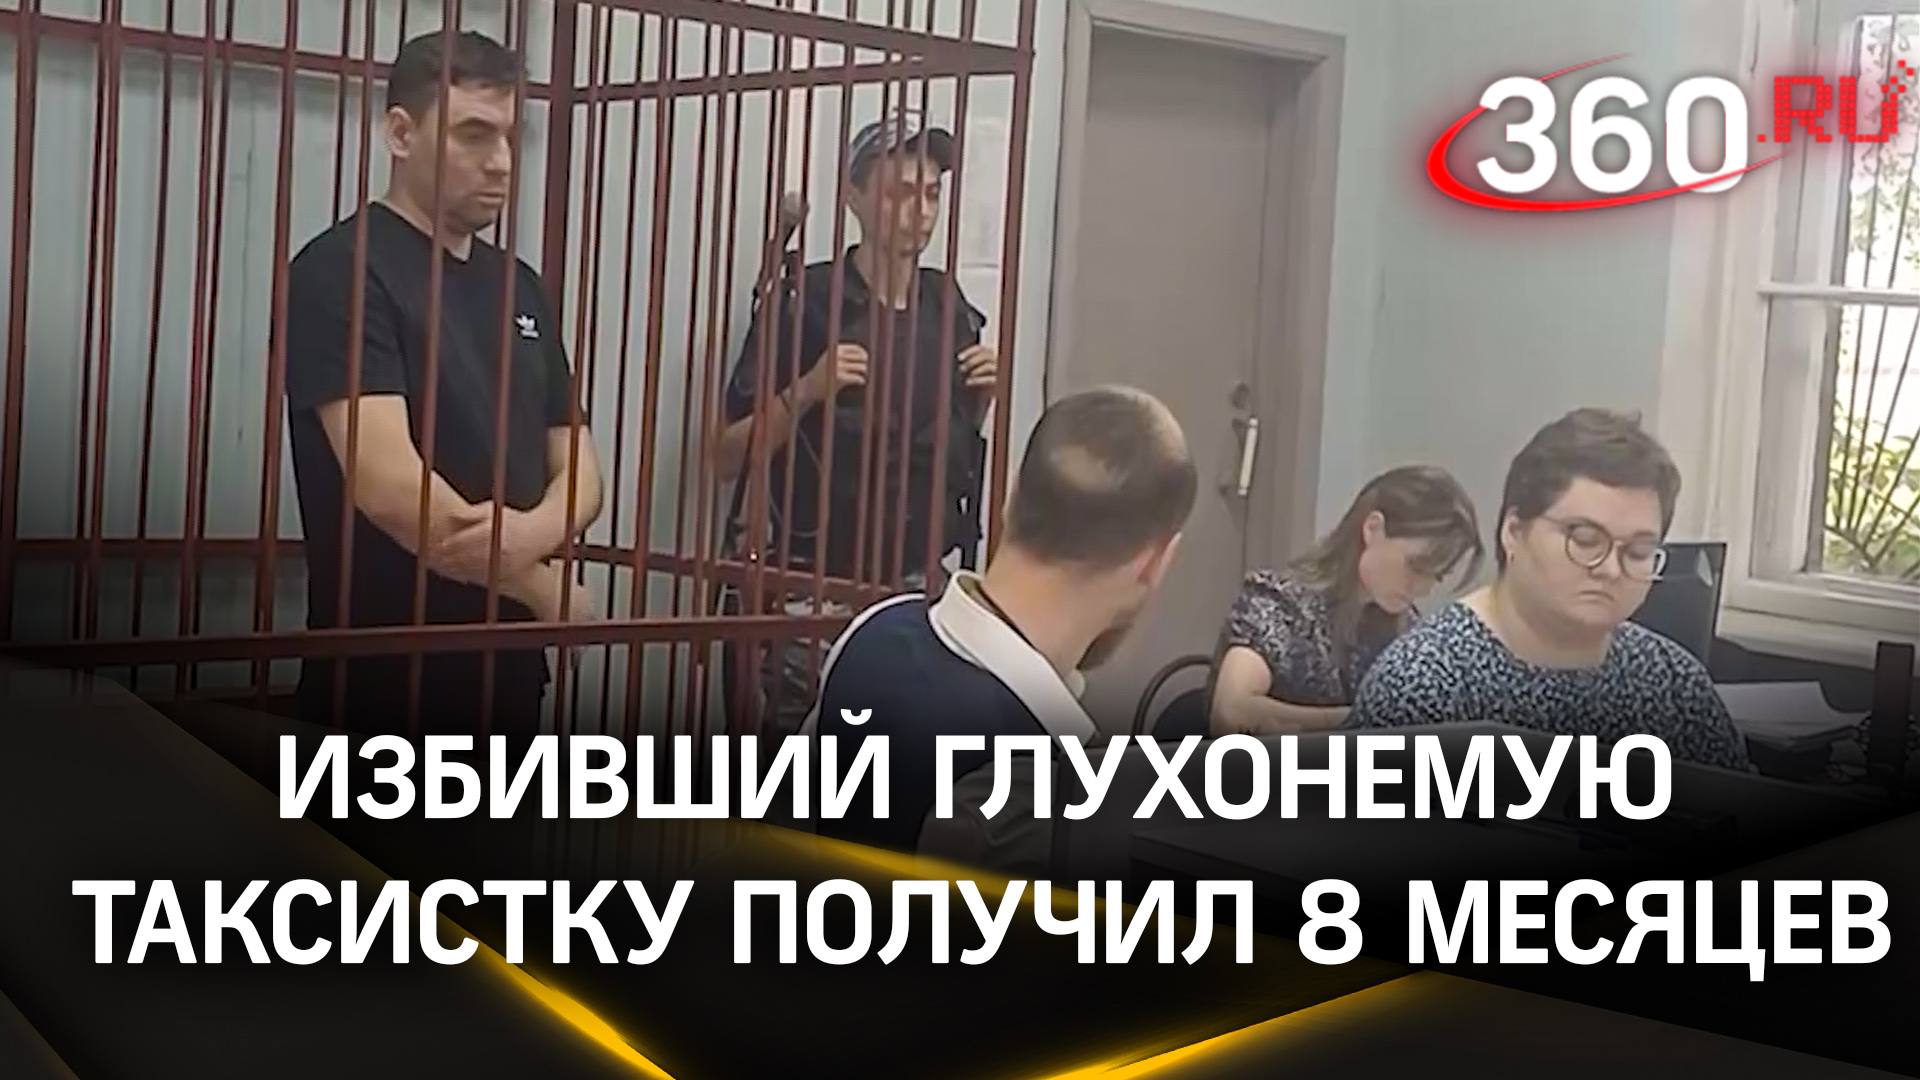 Избивший глухонемую таксистку в Дмитрове получил 8 месяцев